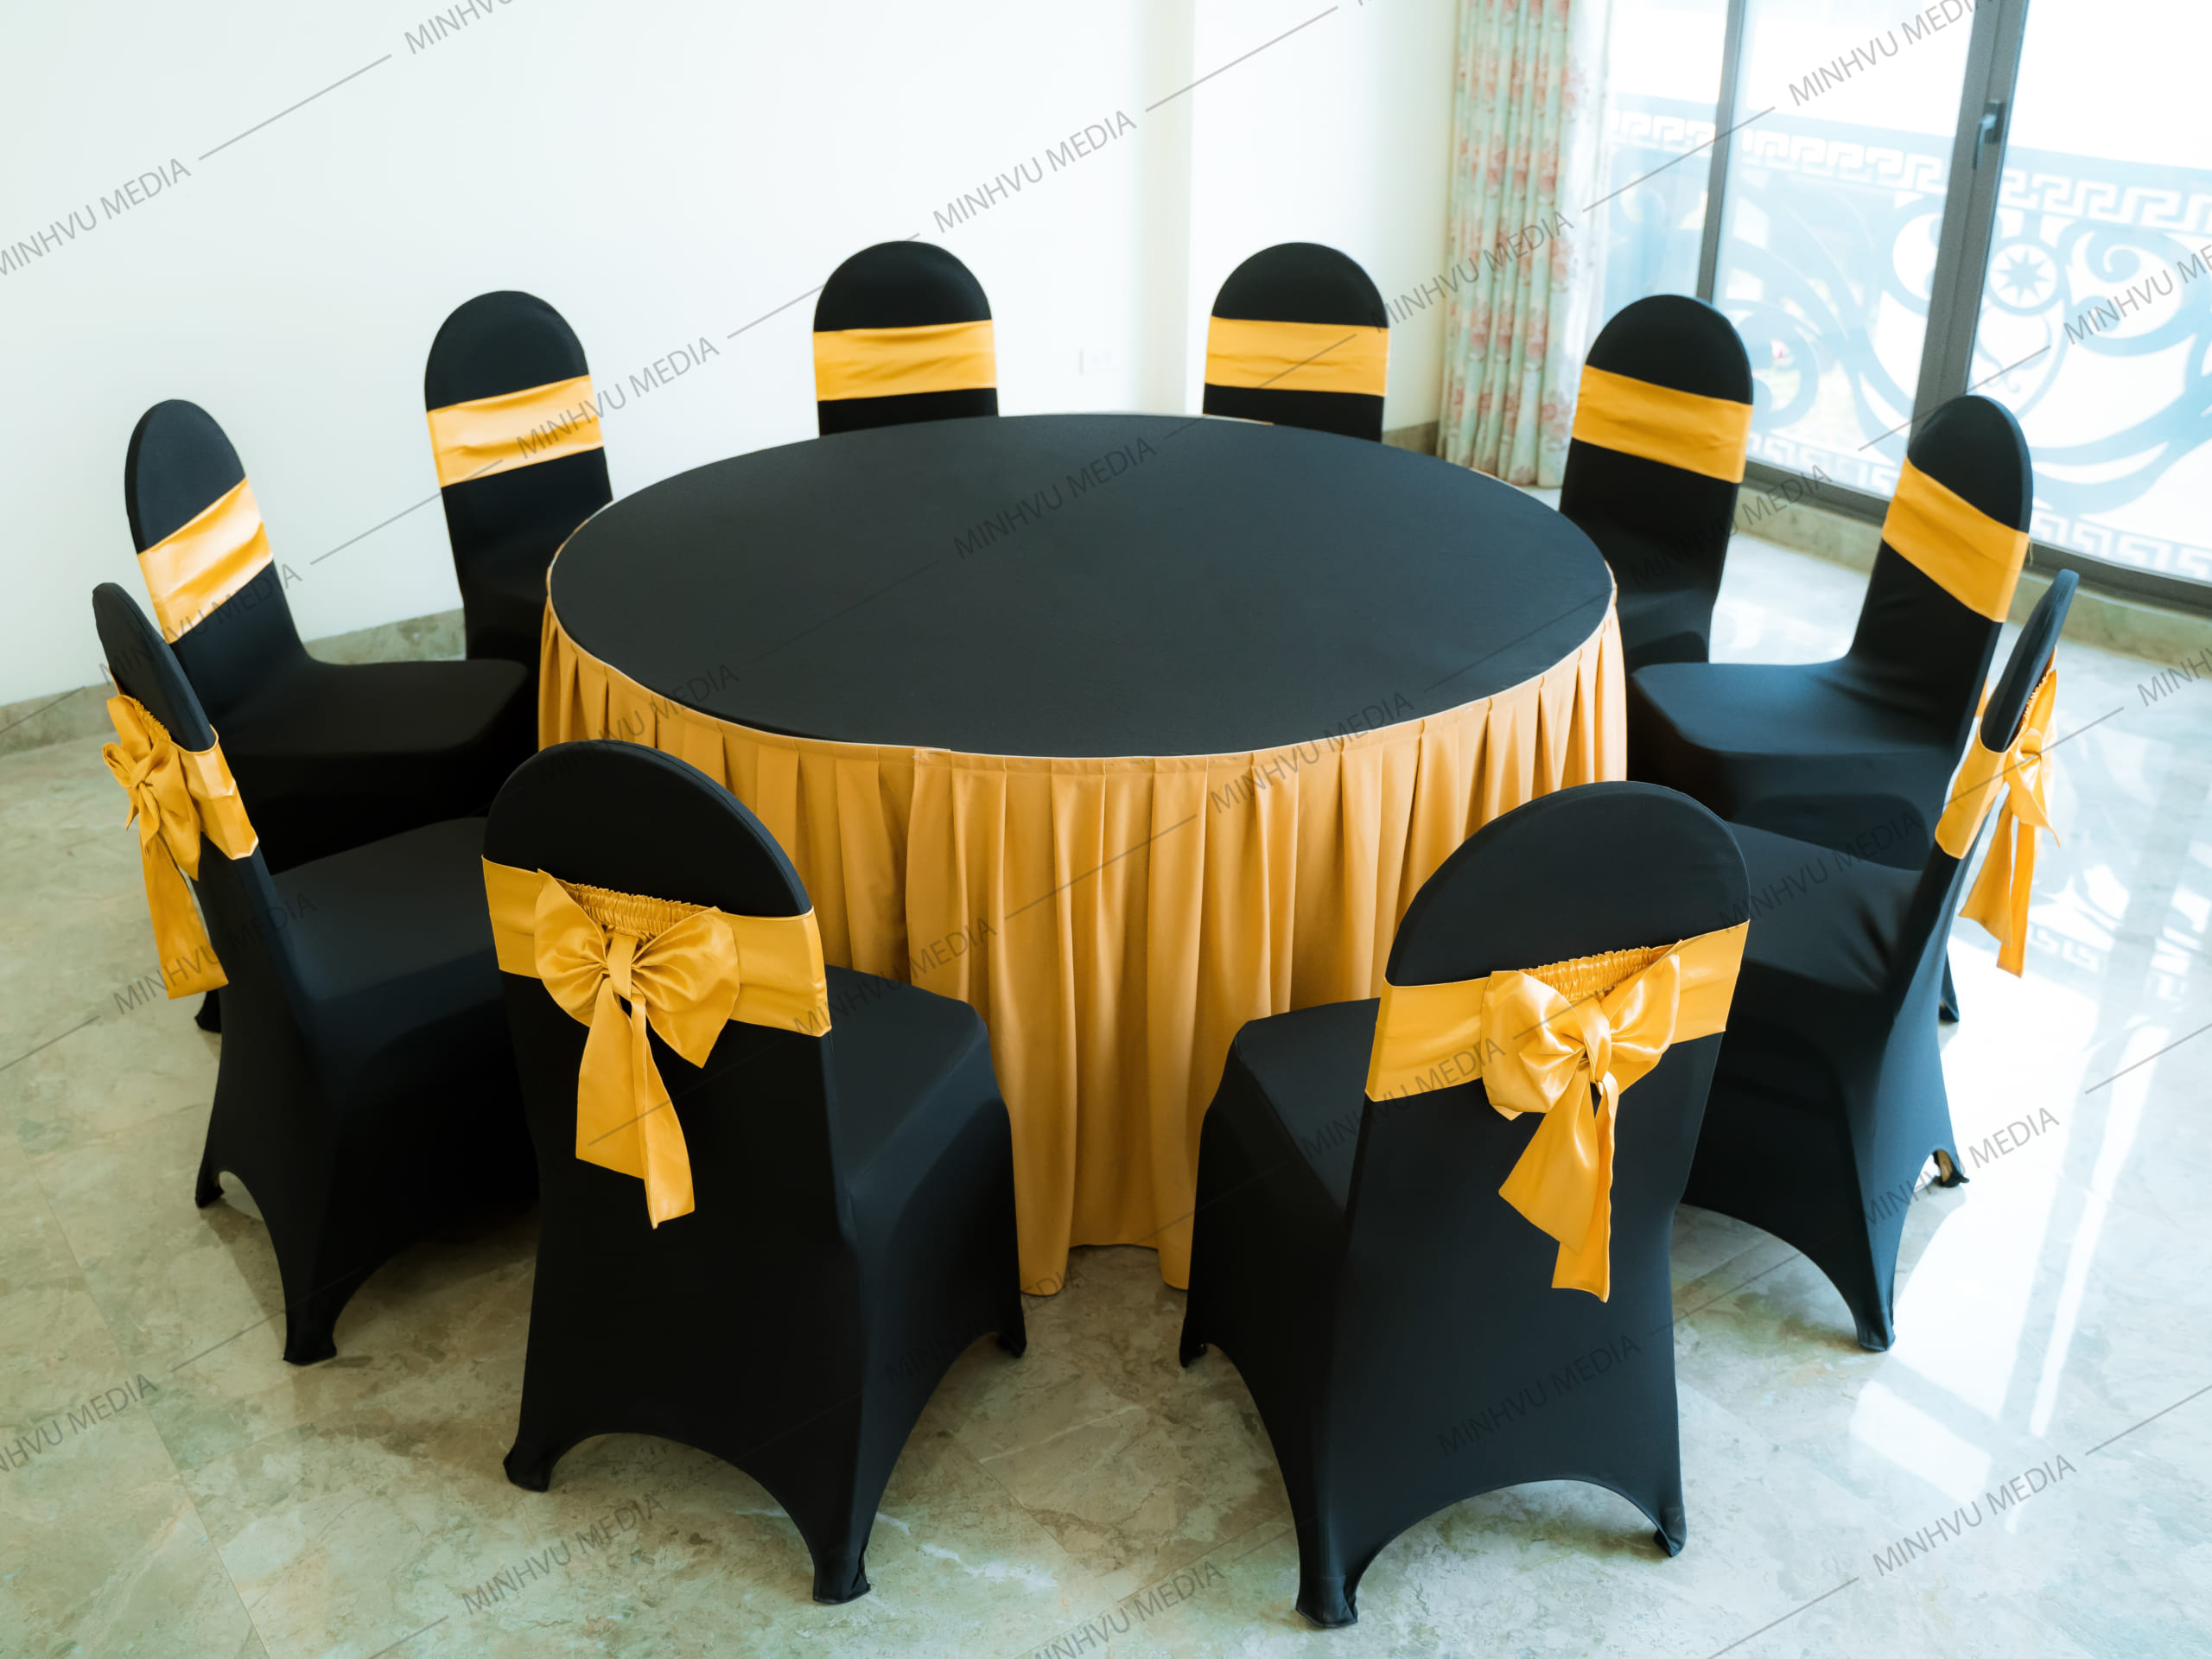 Bàn ghế banquet tròn đen - vàng